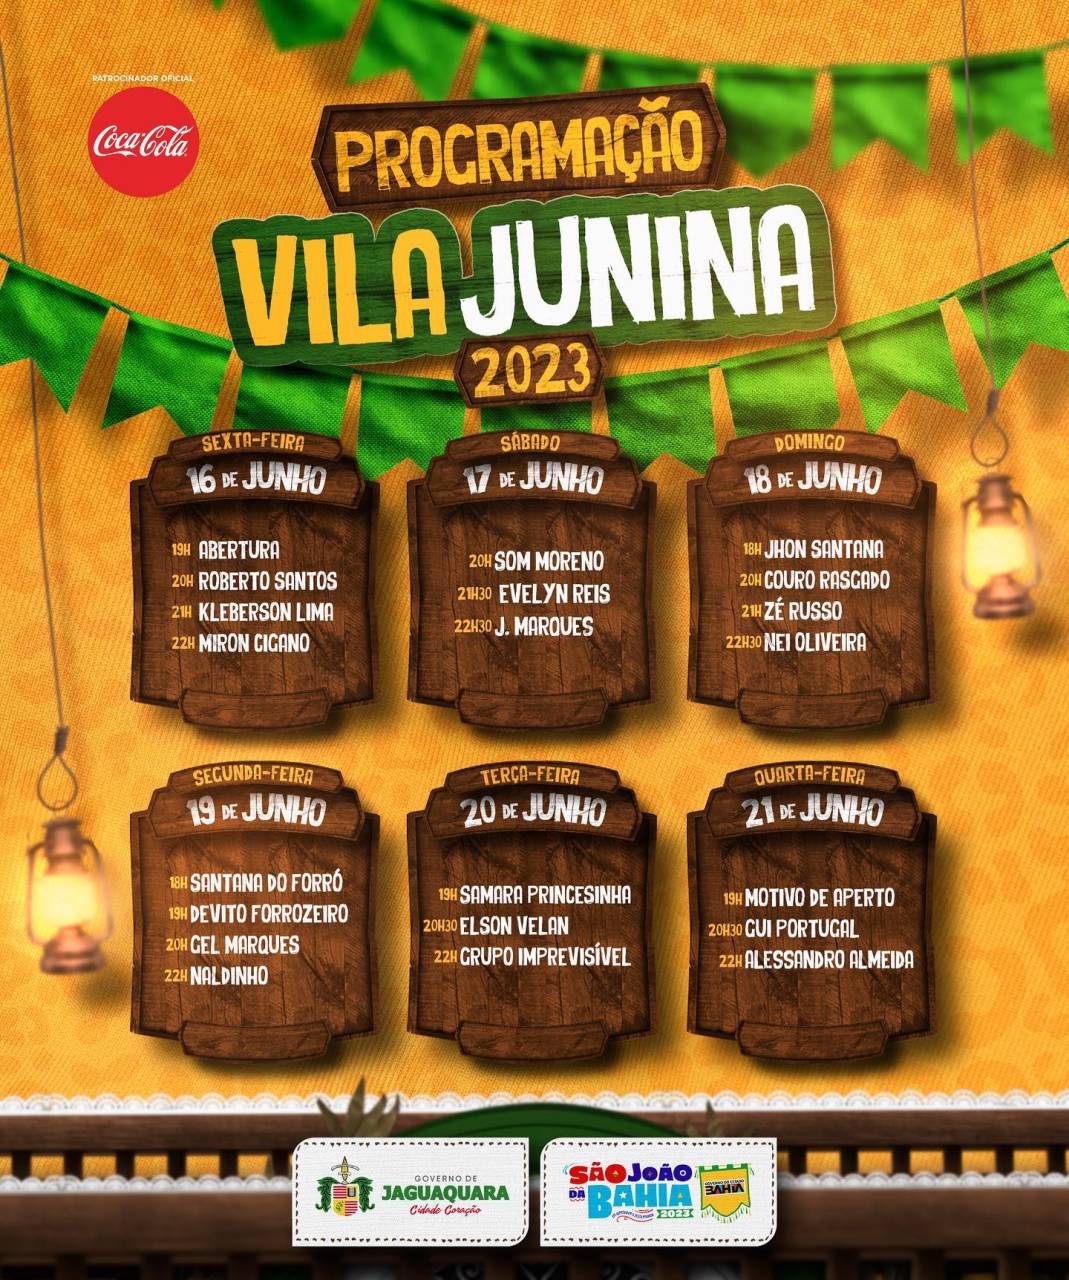  Vila Junina